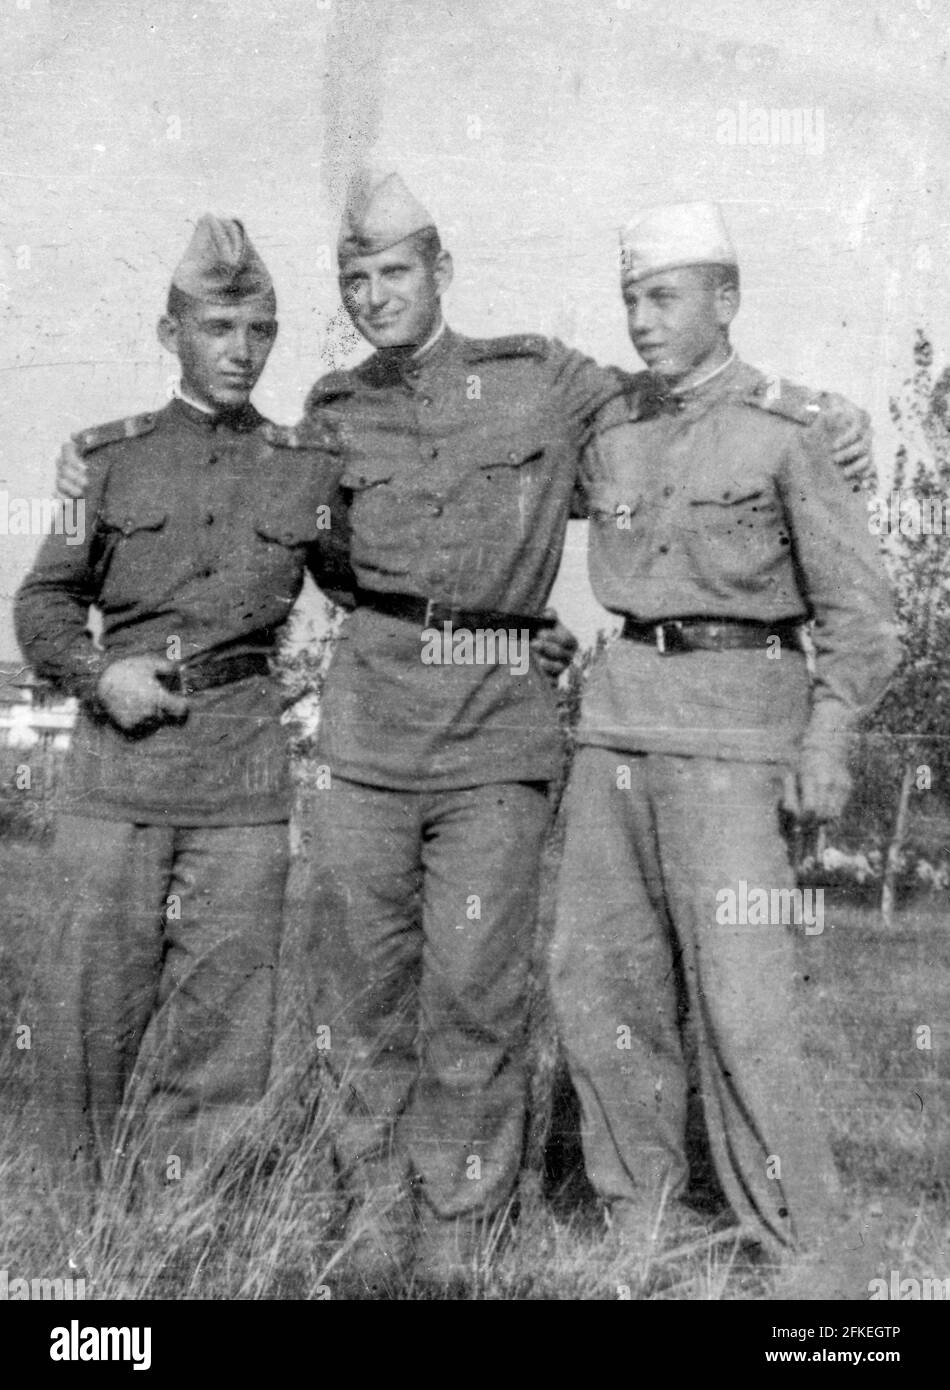 Archivfoto von bulgarischen Soldaten aus dem Dienst um 1958 Stockfoto